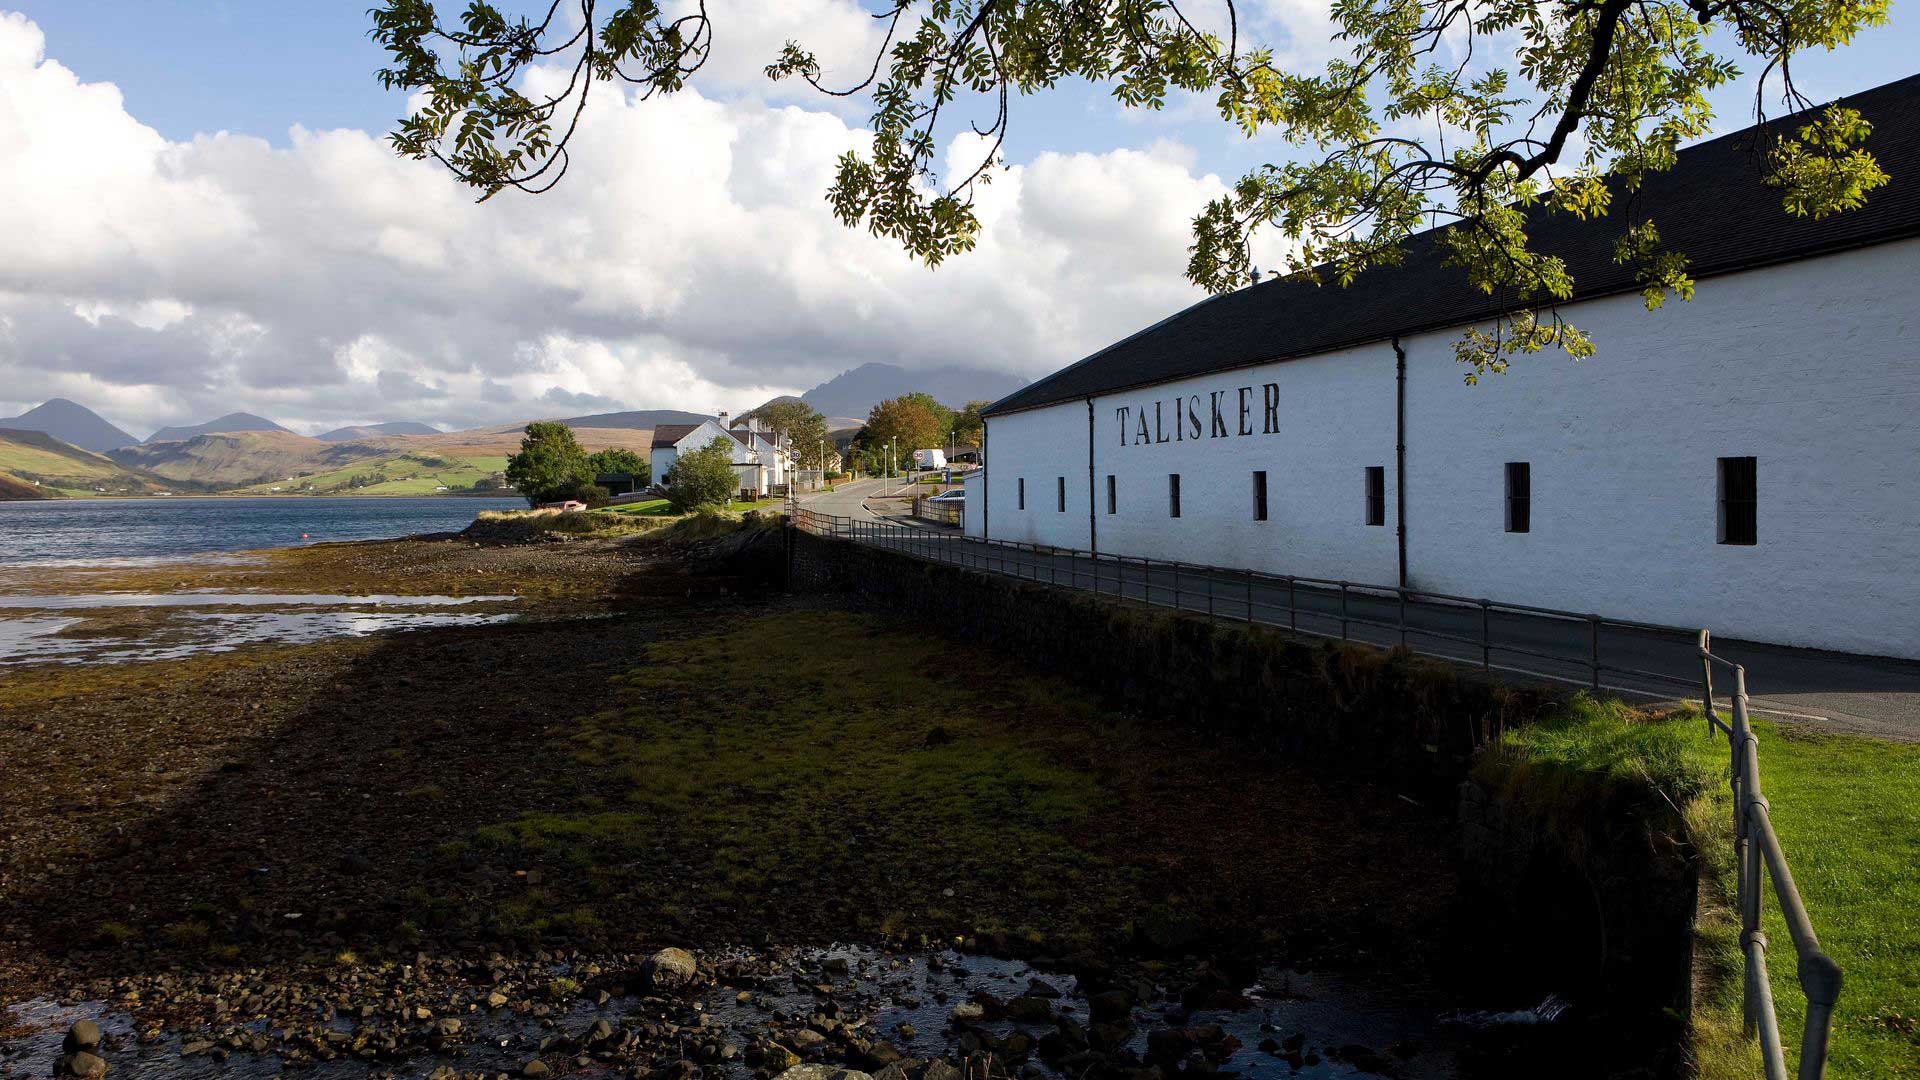 Talisker Distillery, Isle of Skye, Scotland